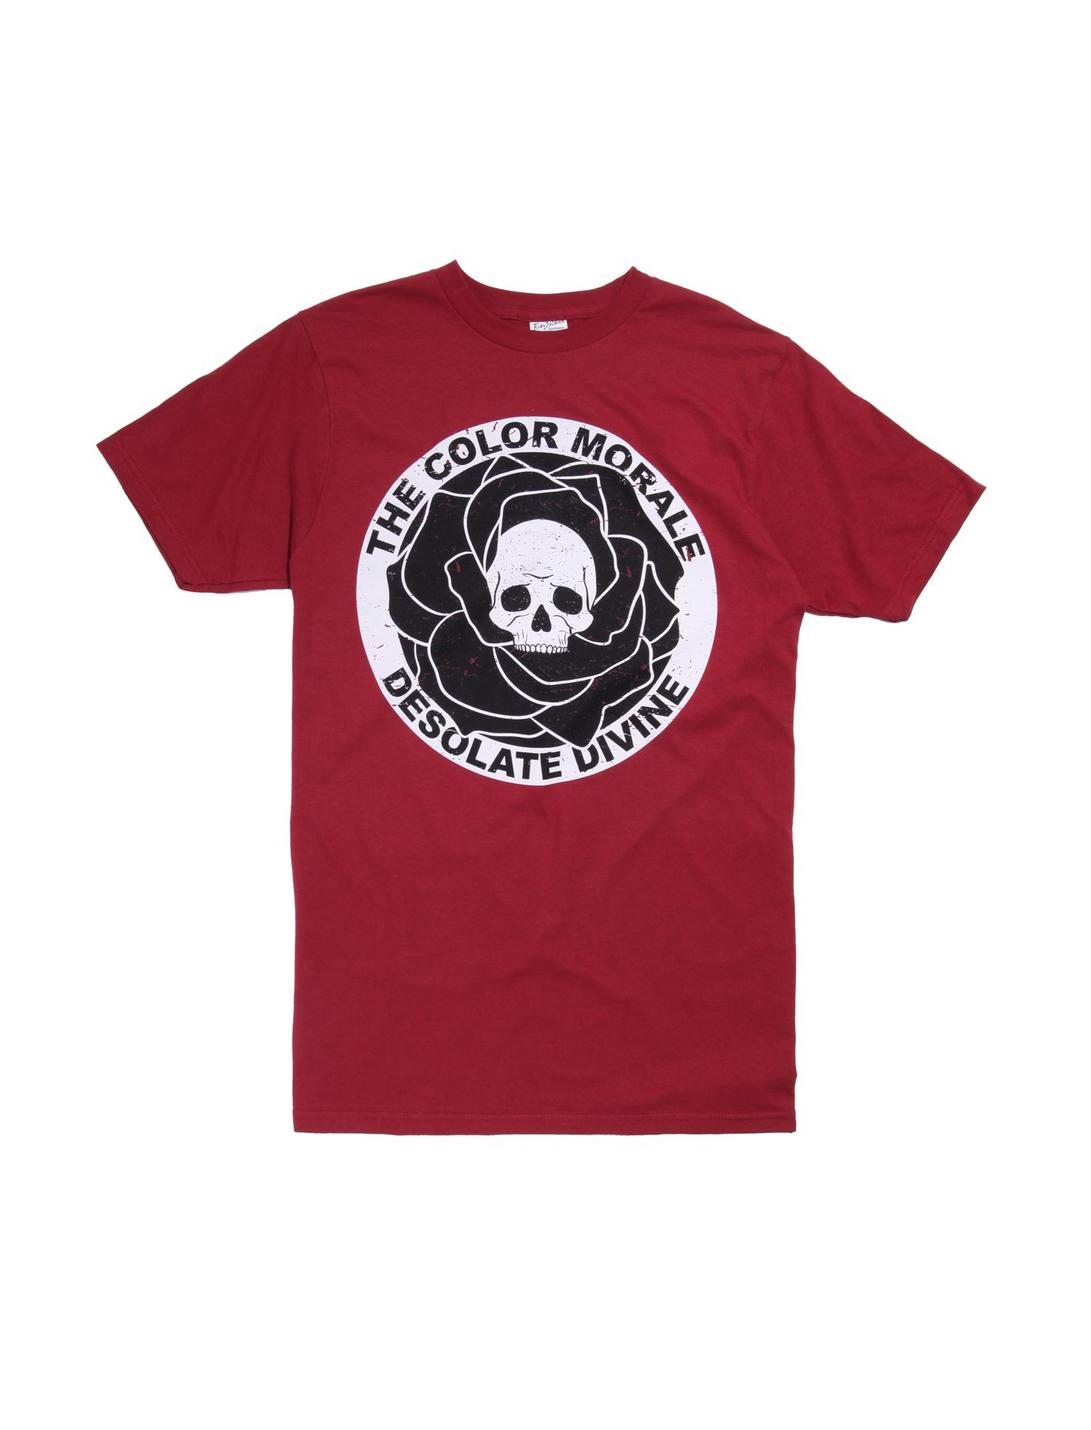 The Color Morale Desolate Divine Skull Rose T-Shirt, BURGUNDY, hi-res